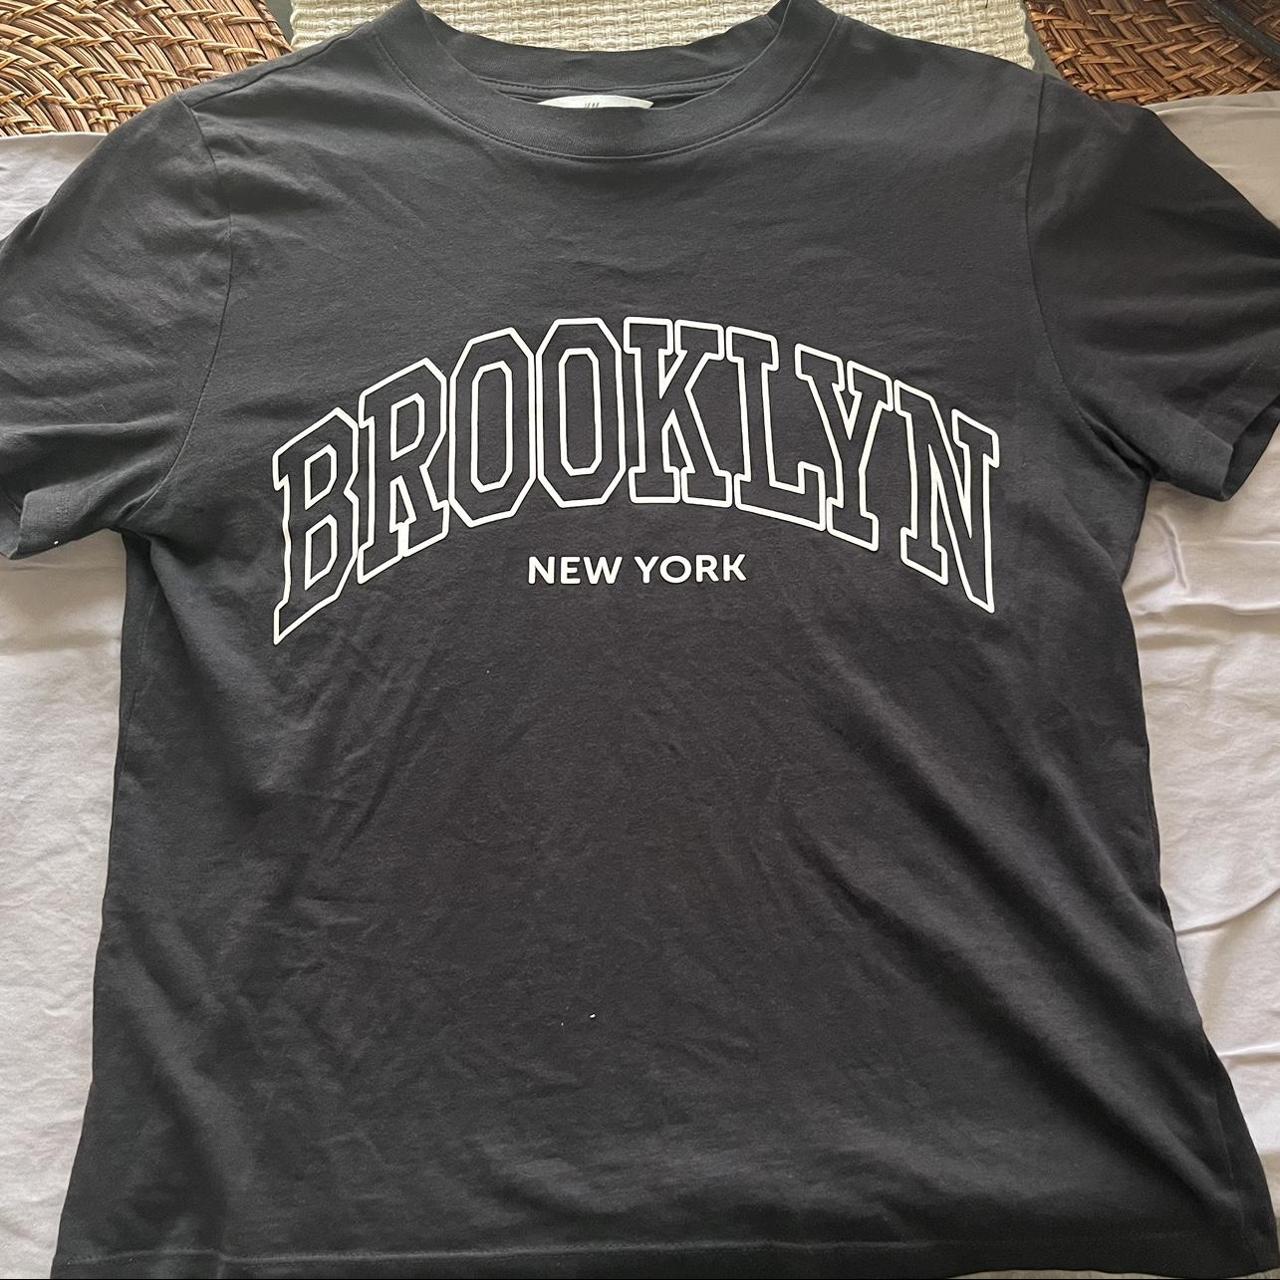 h&m Brooklyn New York tshirt //no stains //no holes - Depop